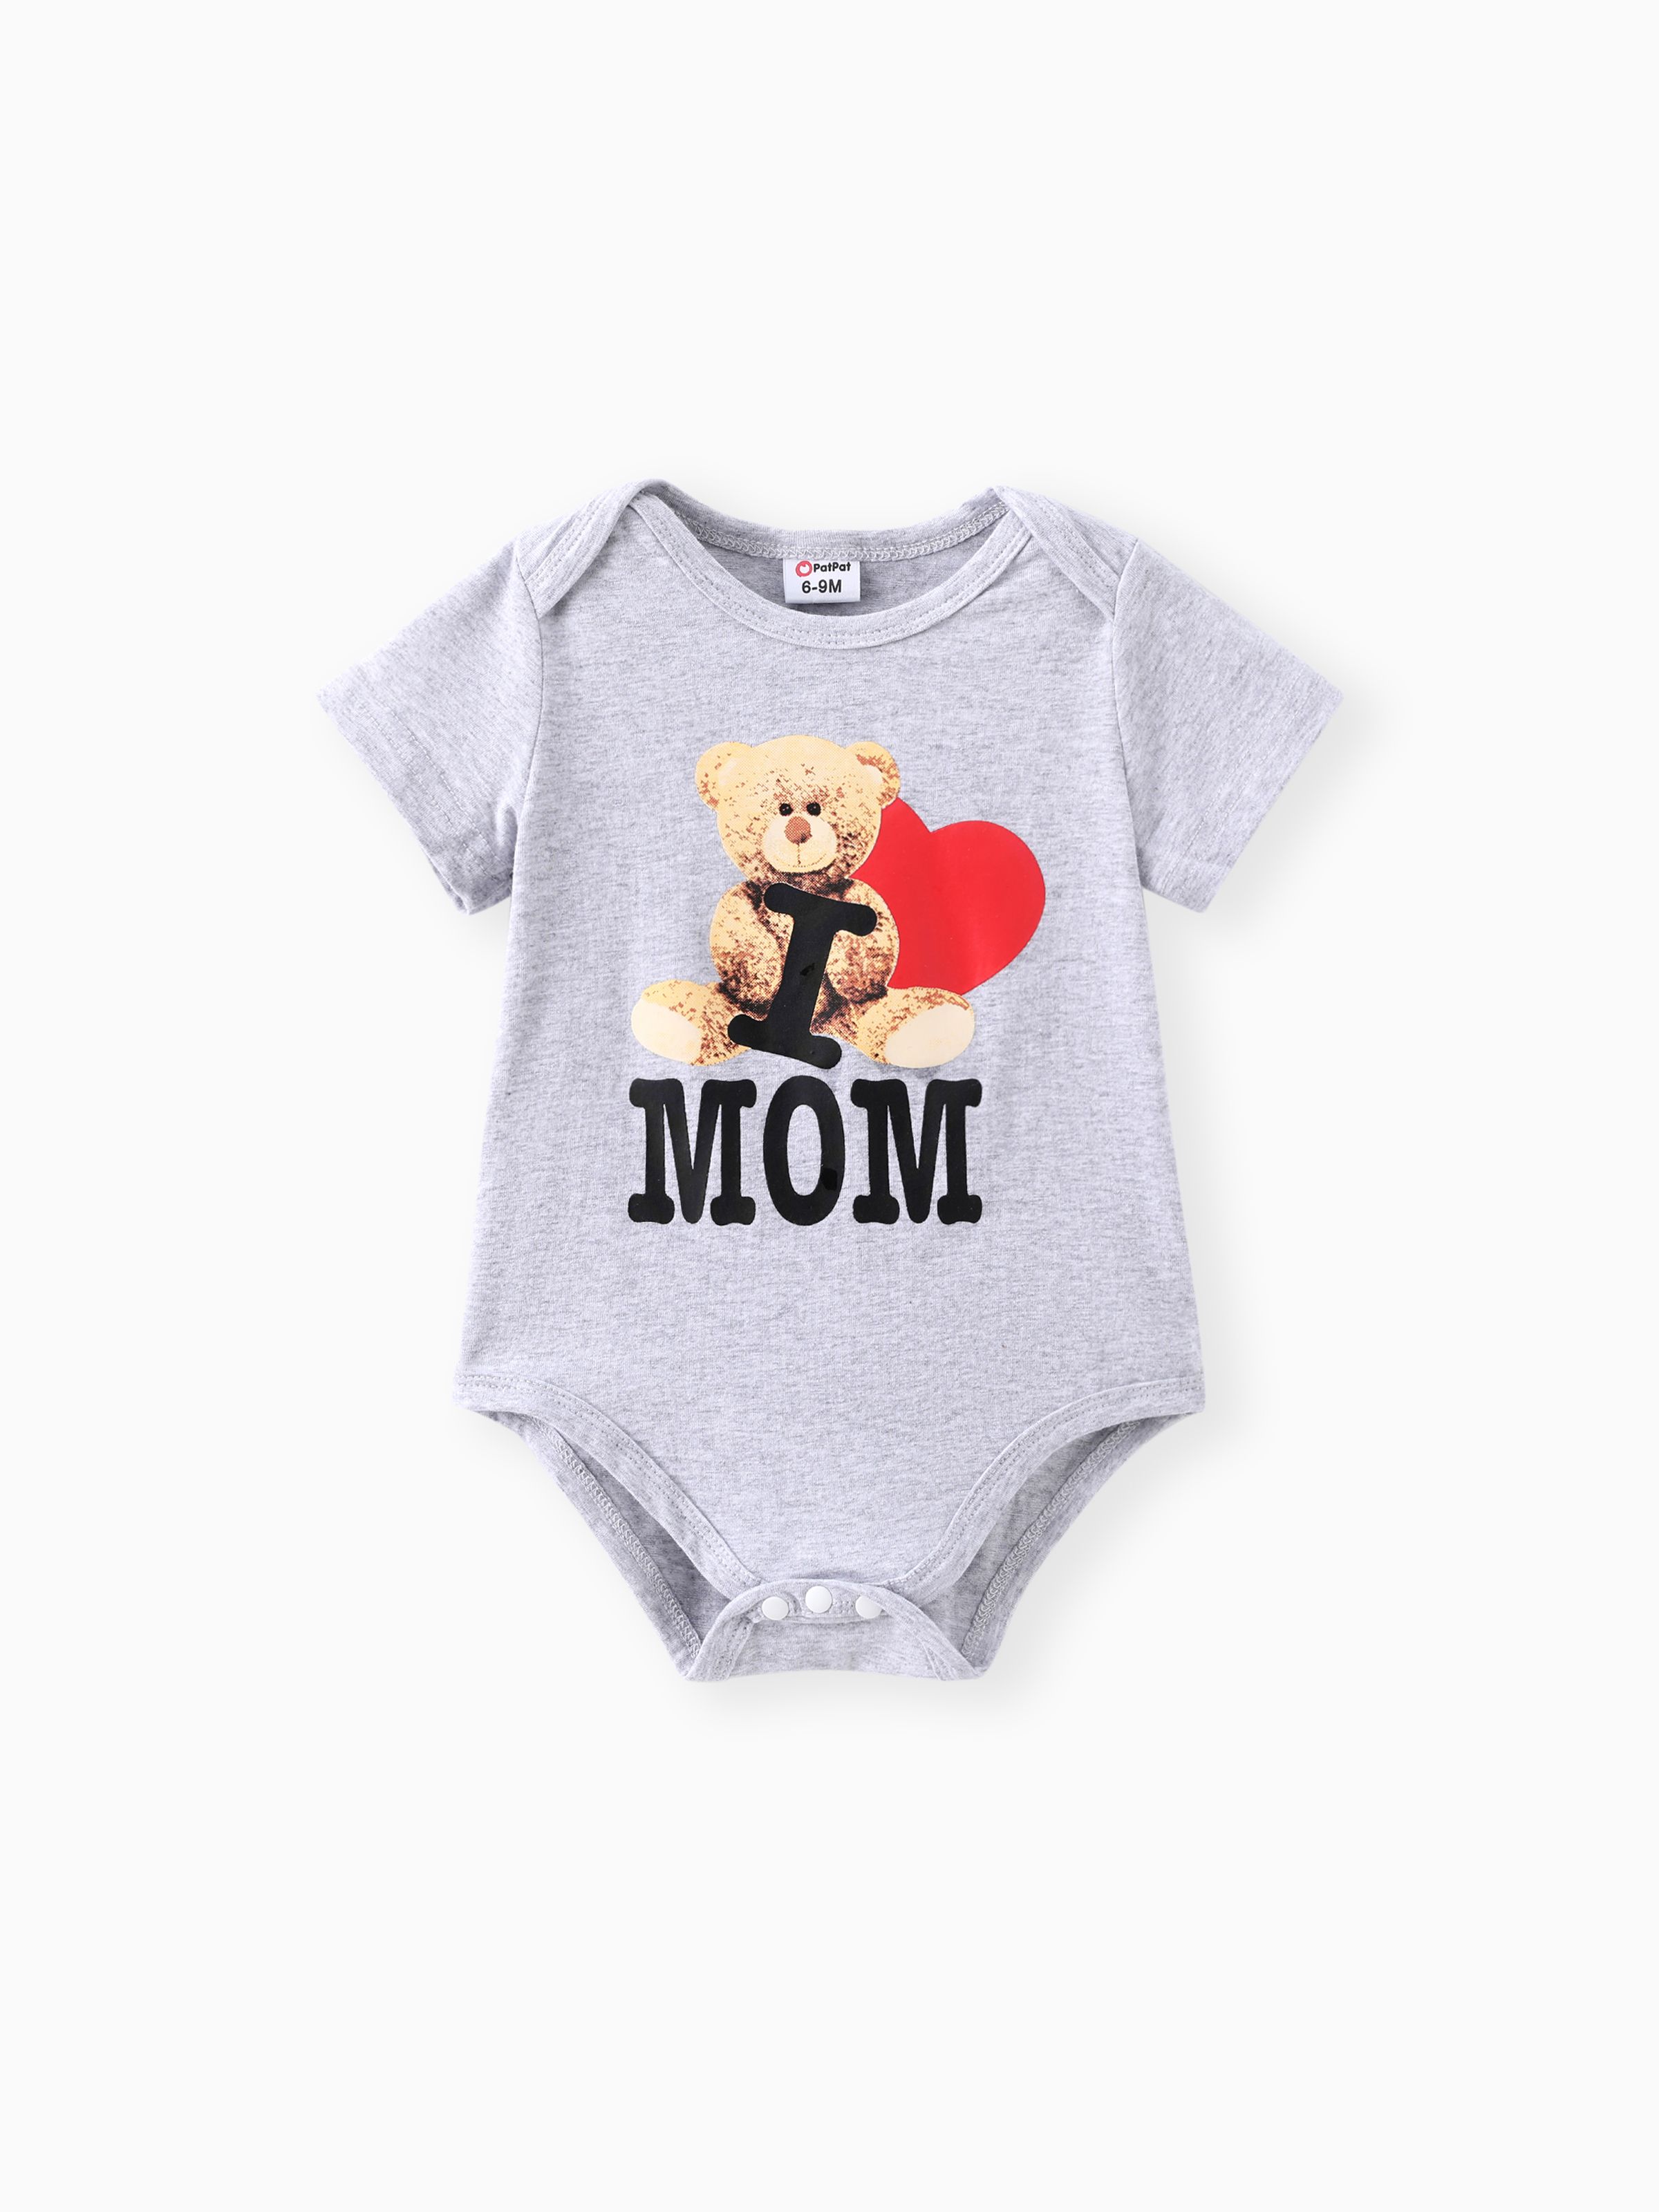 

Baby Boy/Girl 95% Cotton Short-sleeve Bear & Letter Print Romper